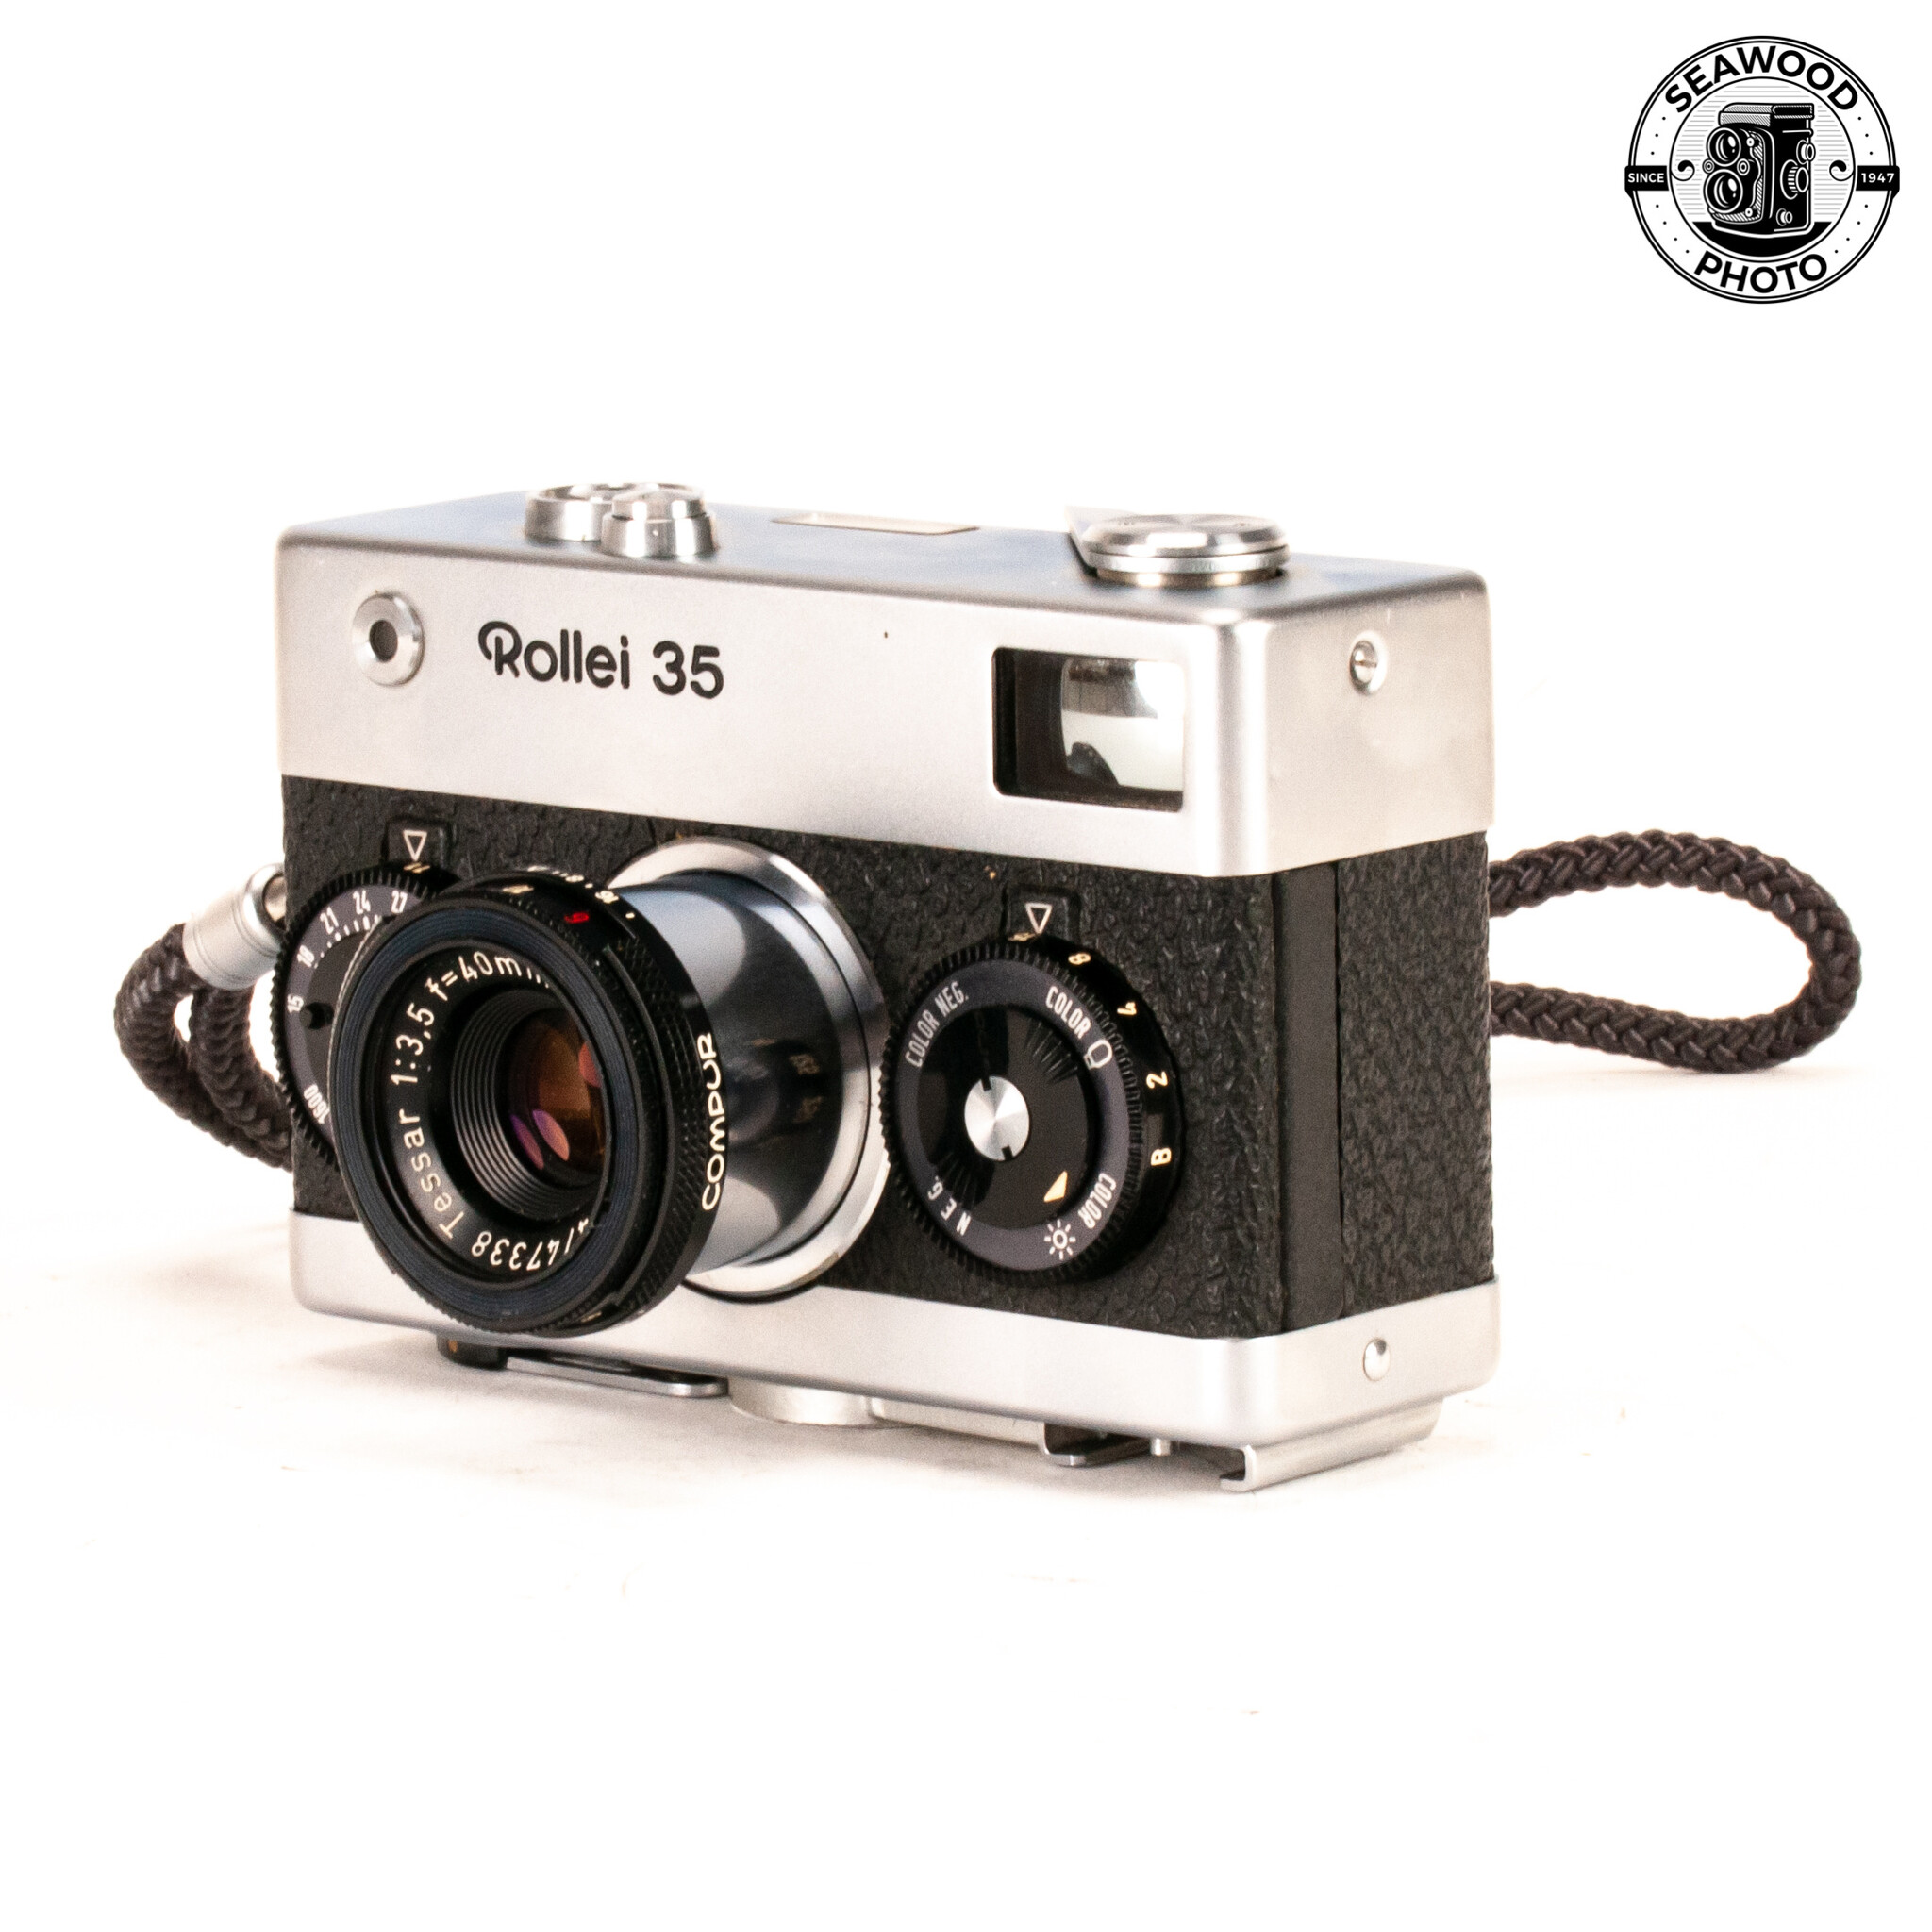 【動作好調】 Rollei ローライ 35 コンパクト フィルムカメラMOCOのカメラ一覧はこちら